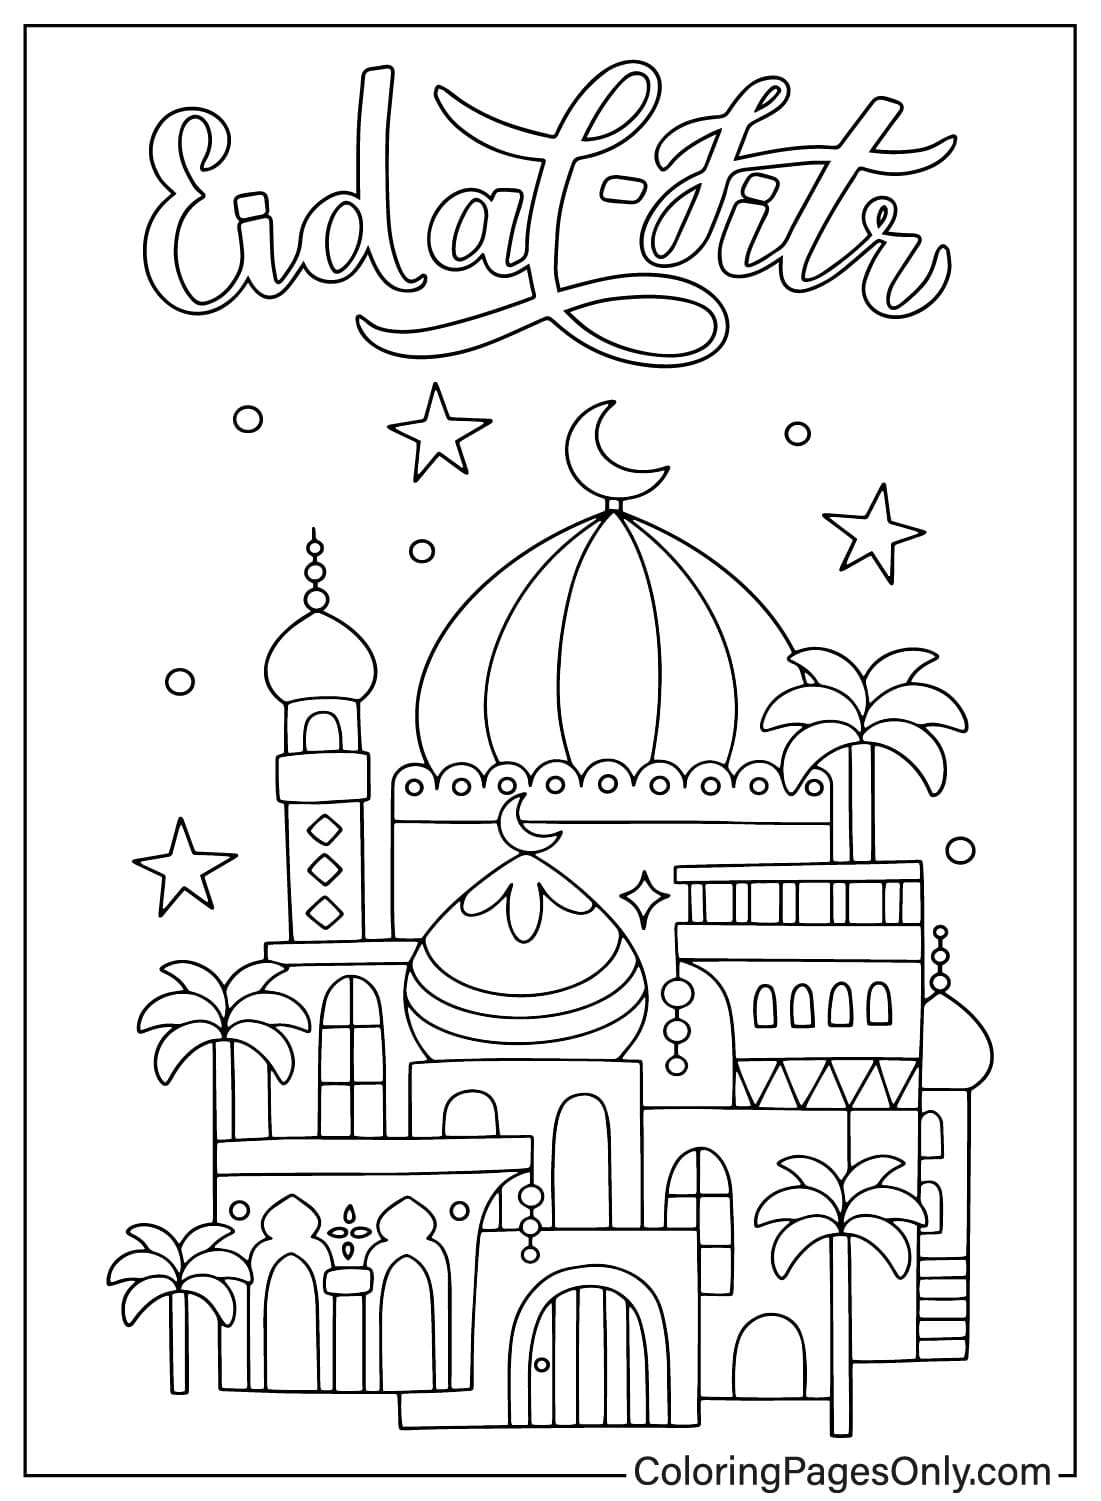 Stampa la pagina da colorare di Eid Al-Fitr da Eid Al-Fitr